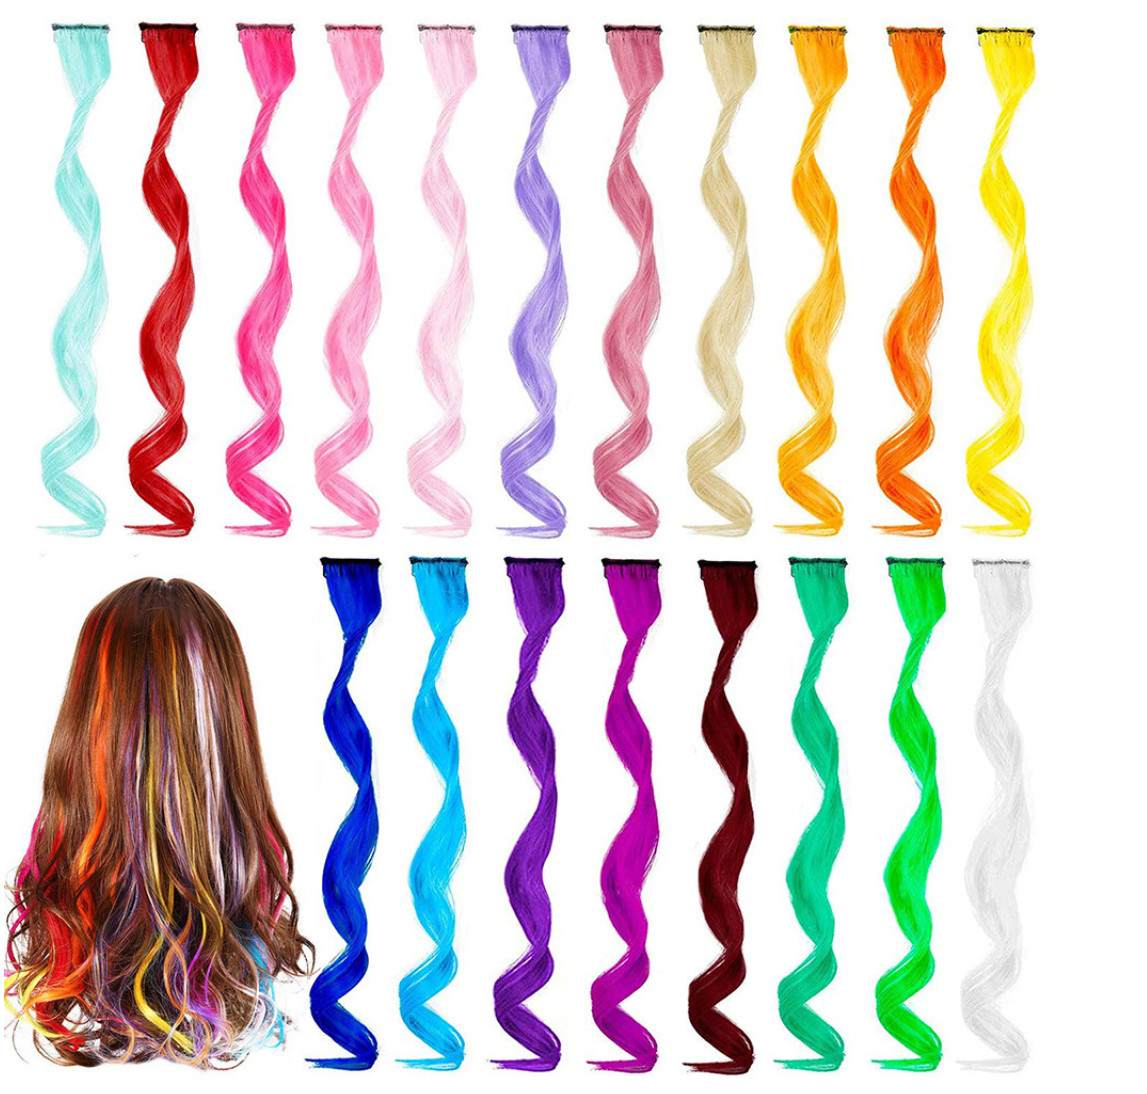 Цветочный градиент 20 -дюймового цветового градиента. Один зажим вьющиеся волосы длинные вьющиеся химические волосы волокна с множеством стилей на выбор из поддерживающей настройки